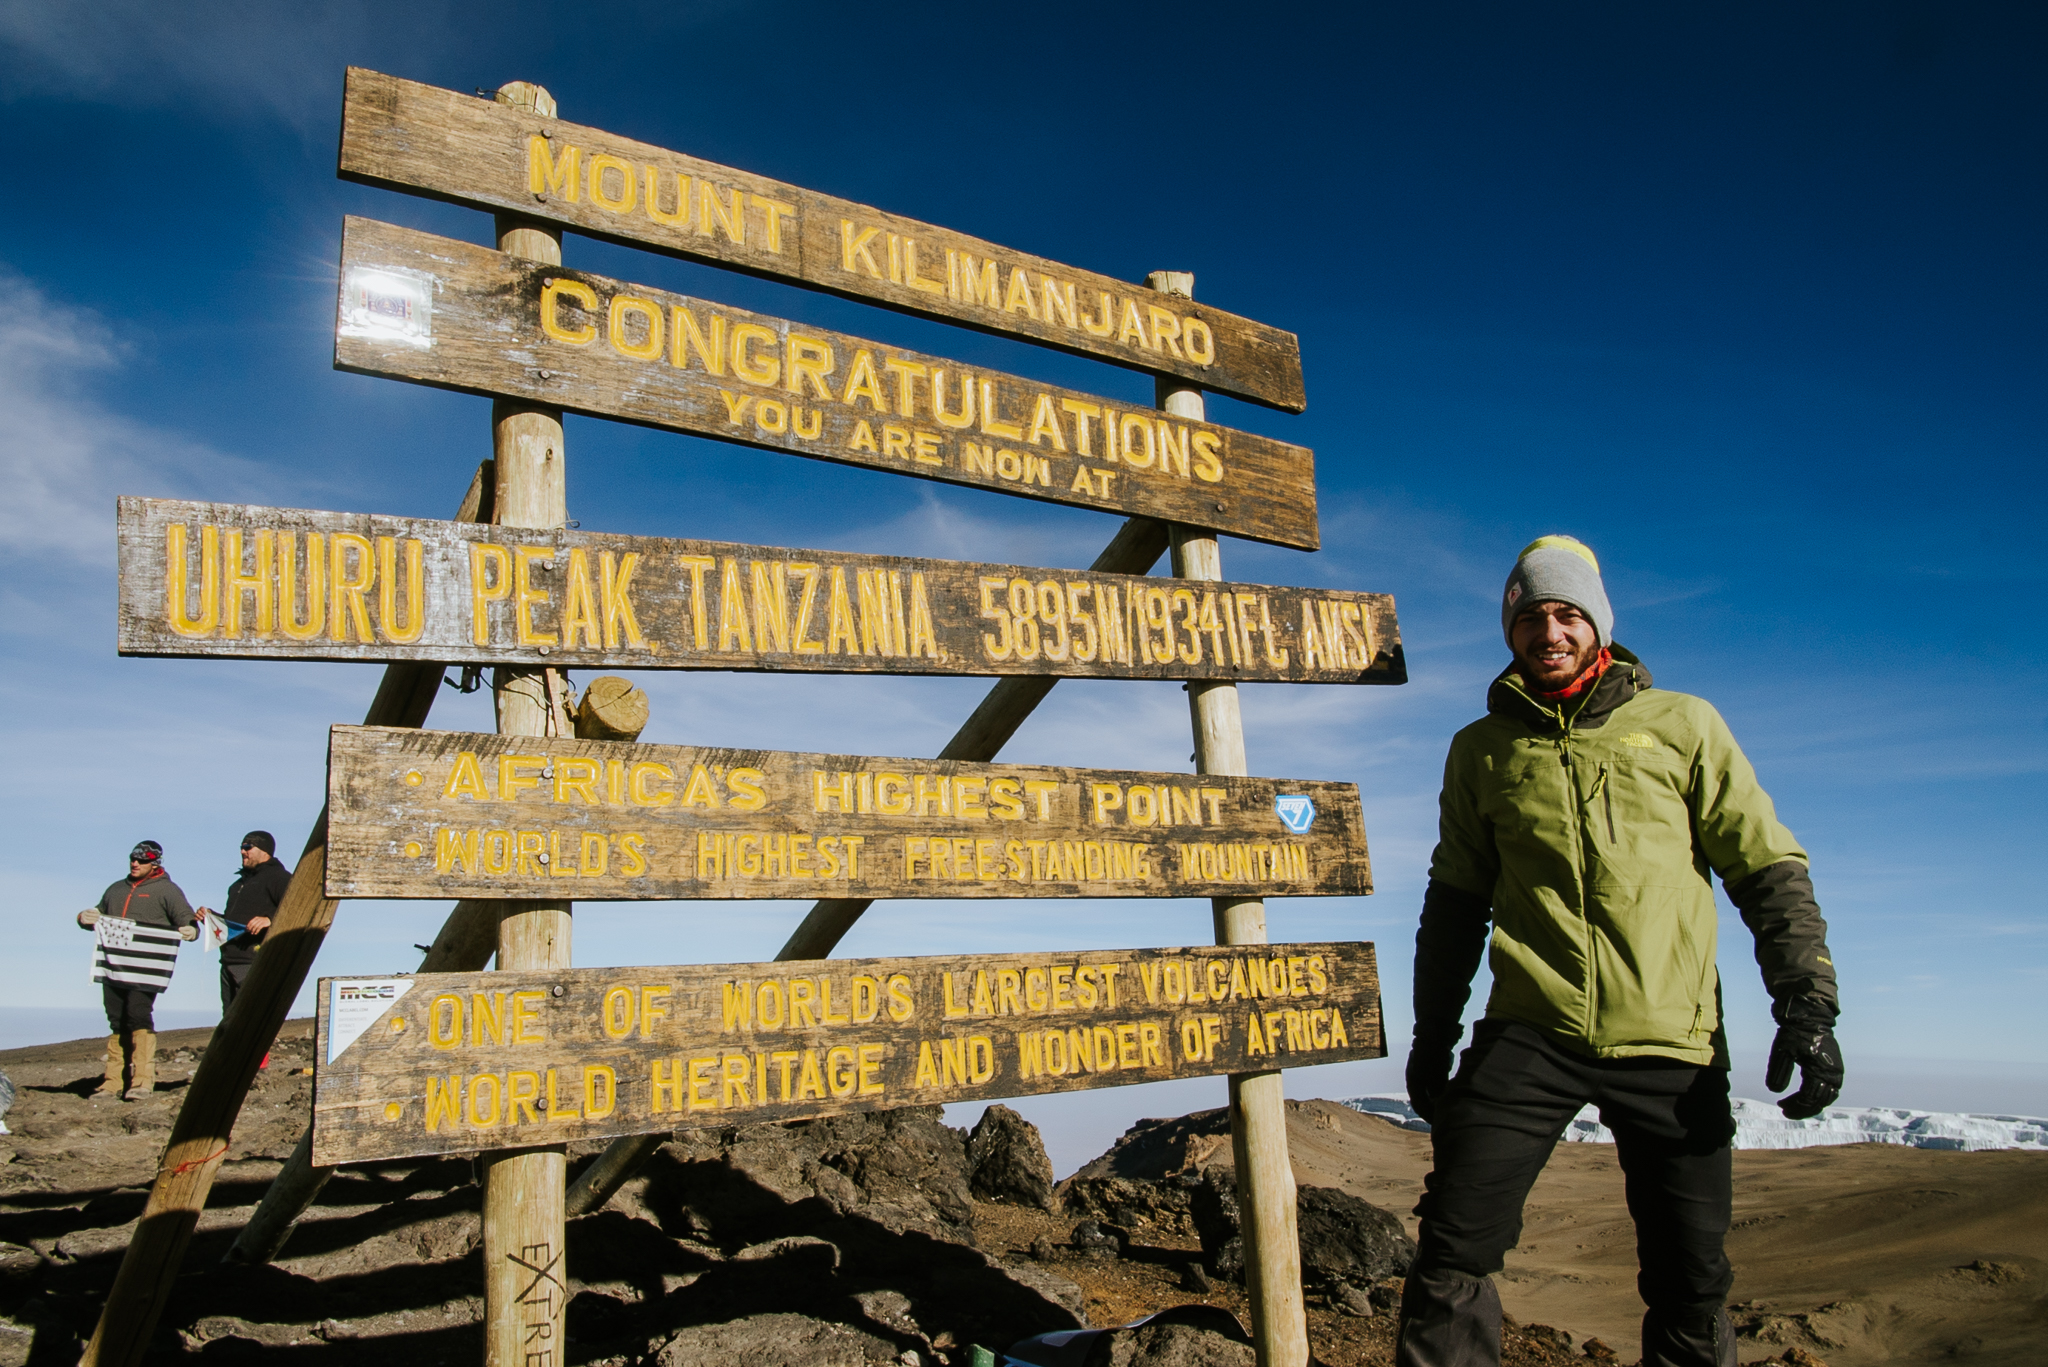 Uhuru peak, túléltük! Mózes Tamás a Kilimandzsáró legmagasabb csúcsán! (Fotó: Józsa Levi)